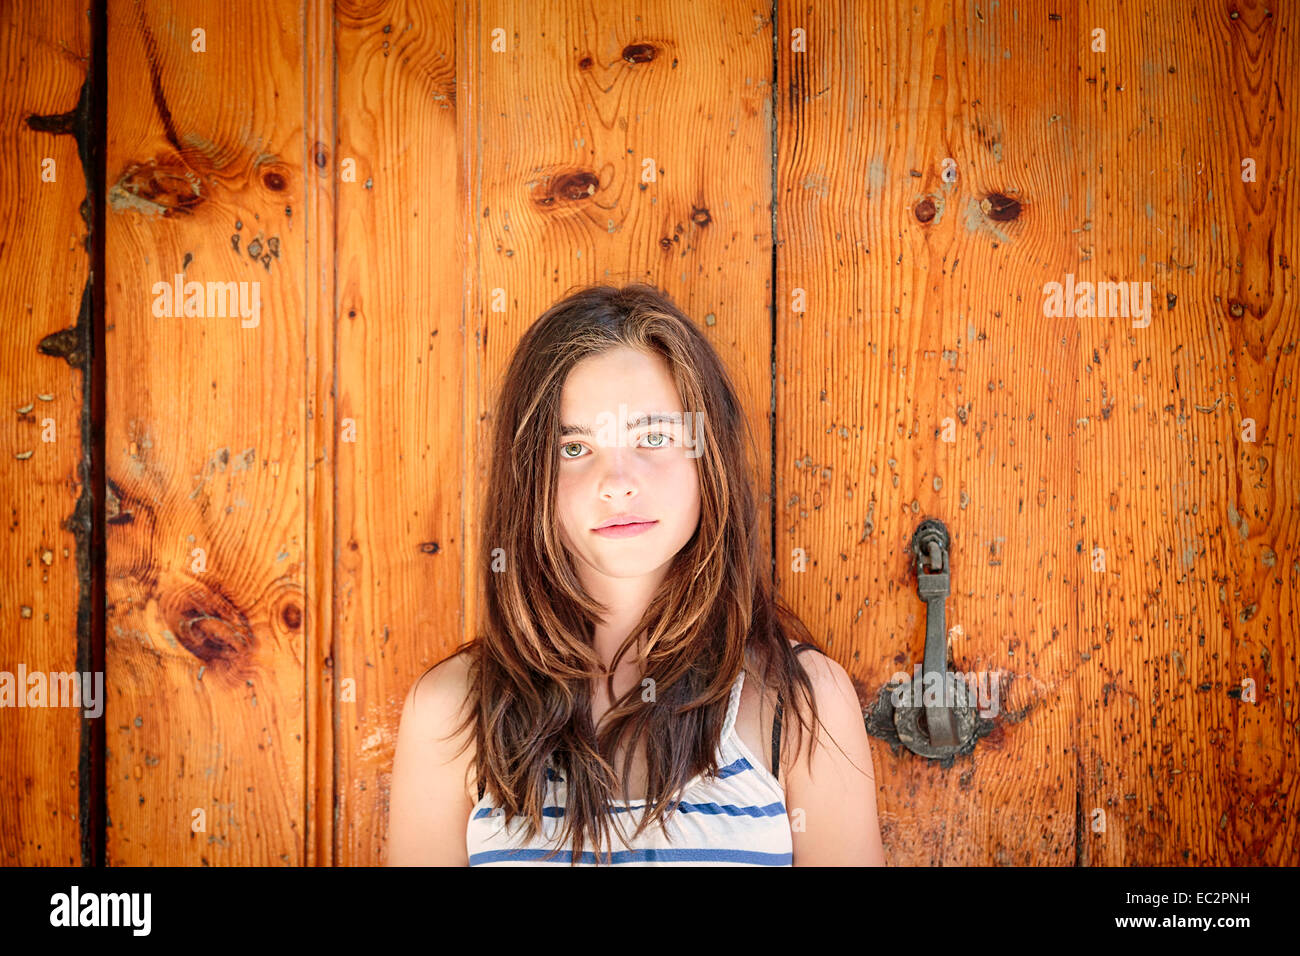 Porträt eines schönen Mädchens vor einer alten Holztür Stockfoto